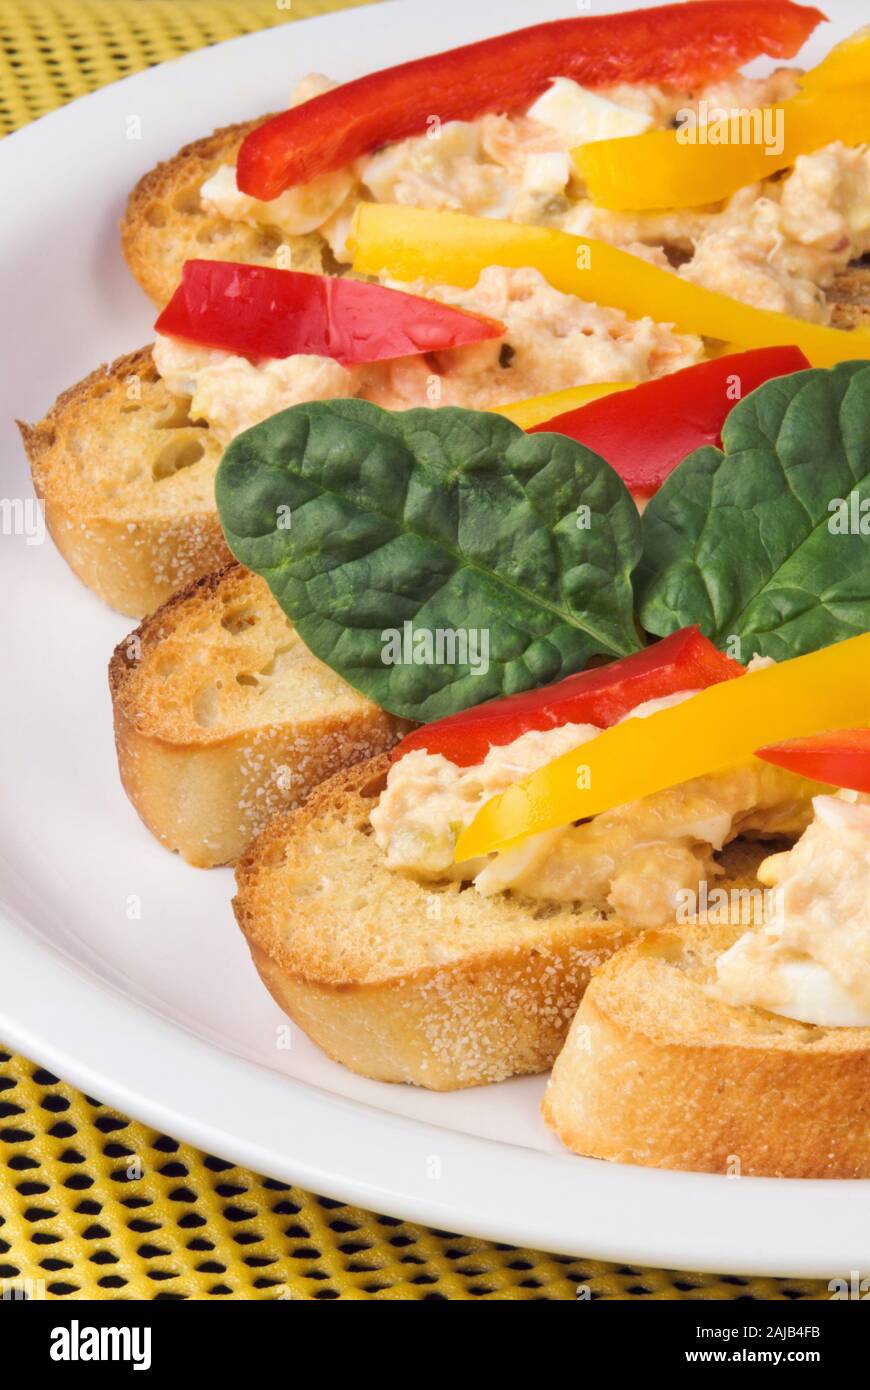 Aprire di fronte tostare panini baguette fatta con tonno bianco e rosa selvatica salmone. I peperoni e le foglie di spinaci sono garnishments. Foto Stock